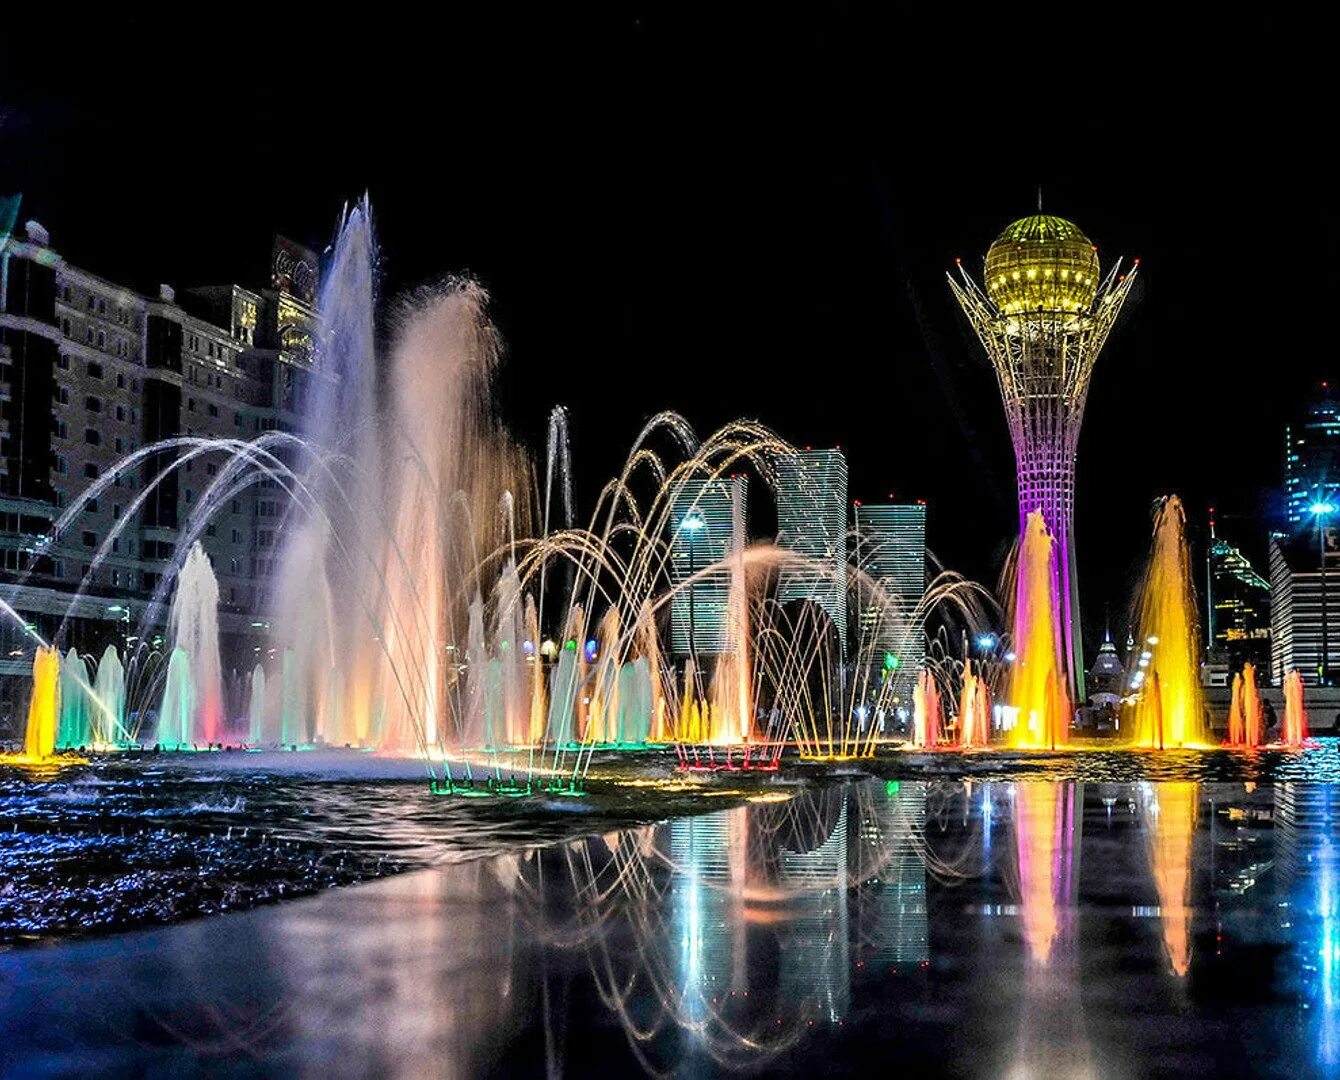 Выходные в астане. Аллея поющих фонтанов Астана. Казахстан Байтерек фонтан. Нурсултан город фонтаны.